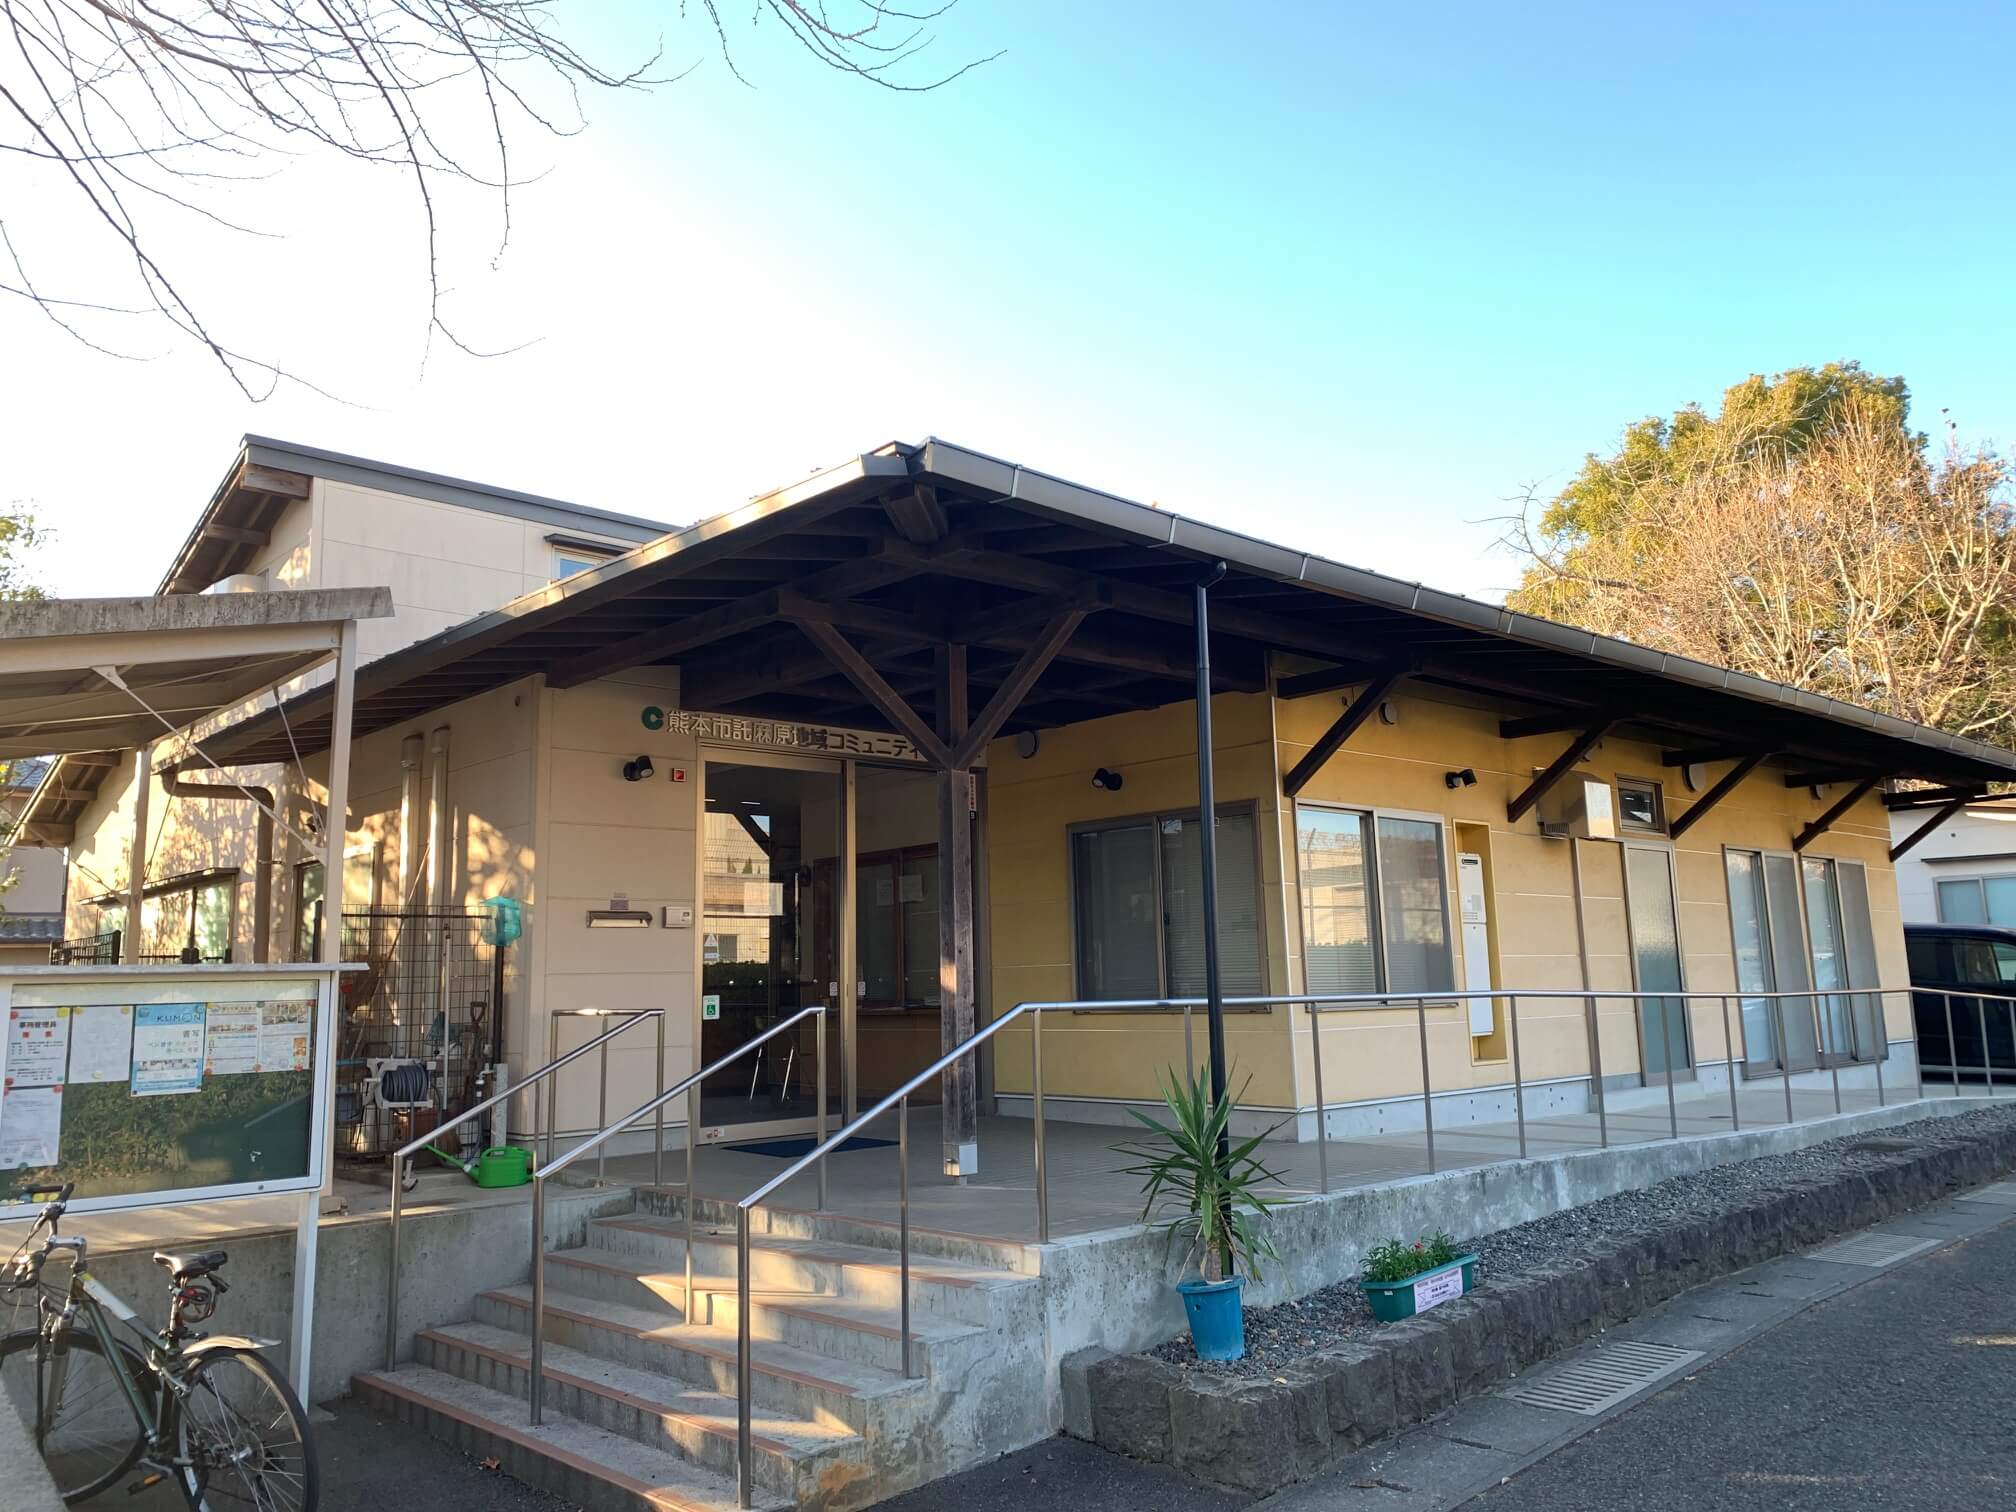 LumiIwabeYOGA託麻原ヨガクラス会場「託麻原（たくまばる）地域コミュニティセンター」熊本市立託麻原小学校の敷地内です。